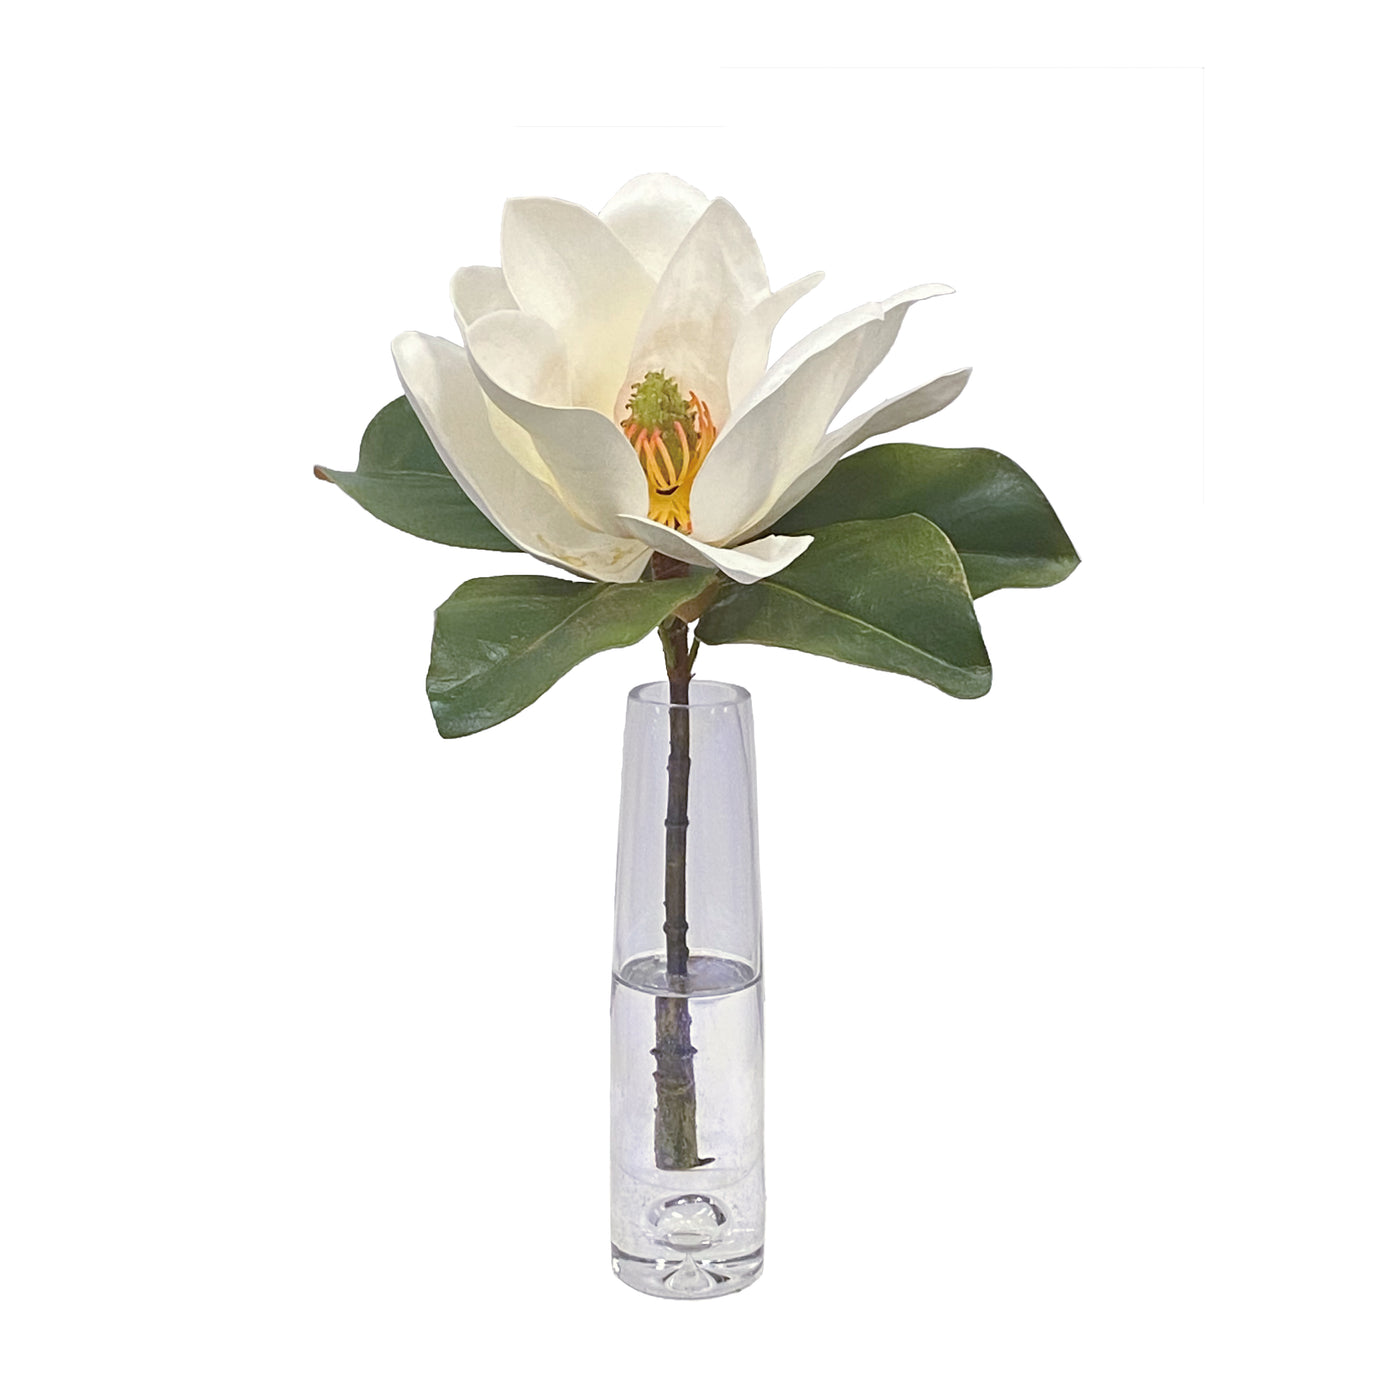 Magnolia in Vase 17"